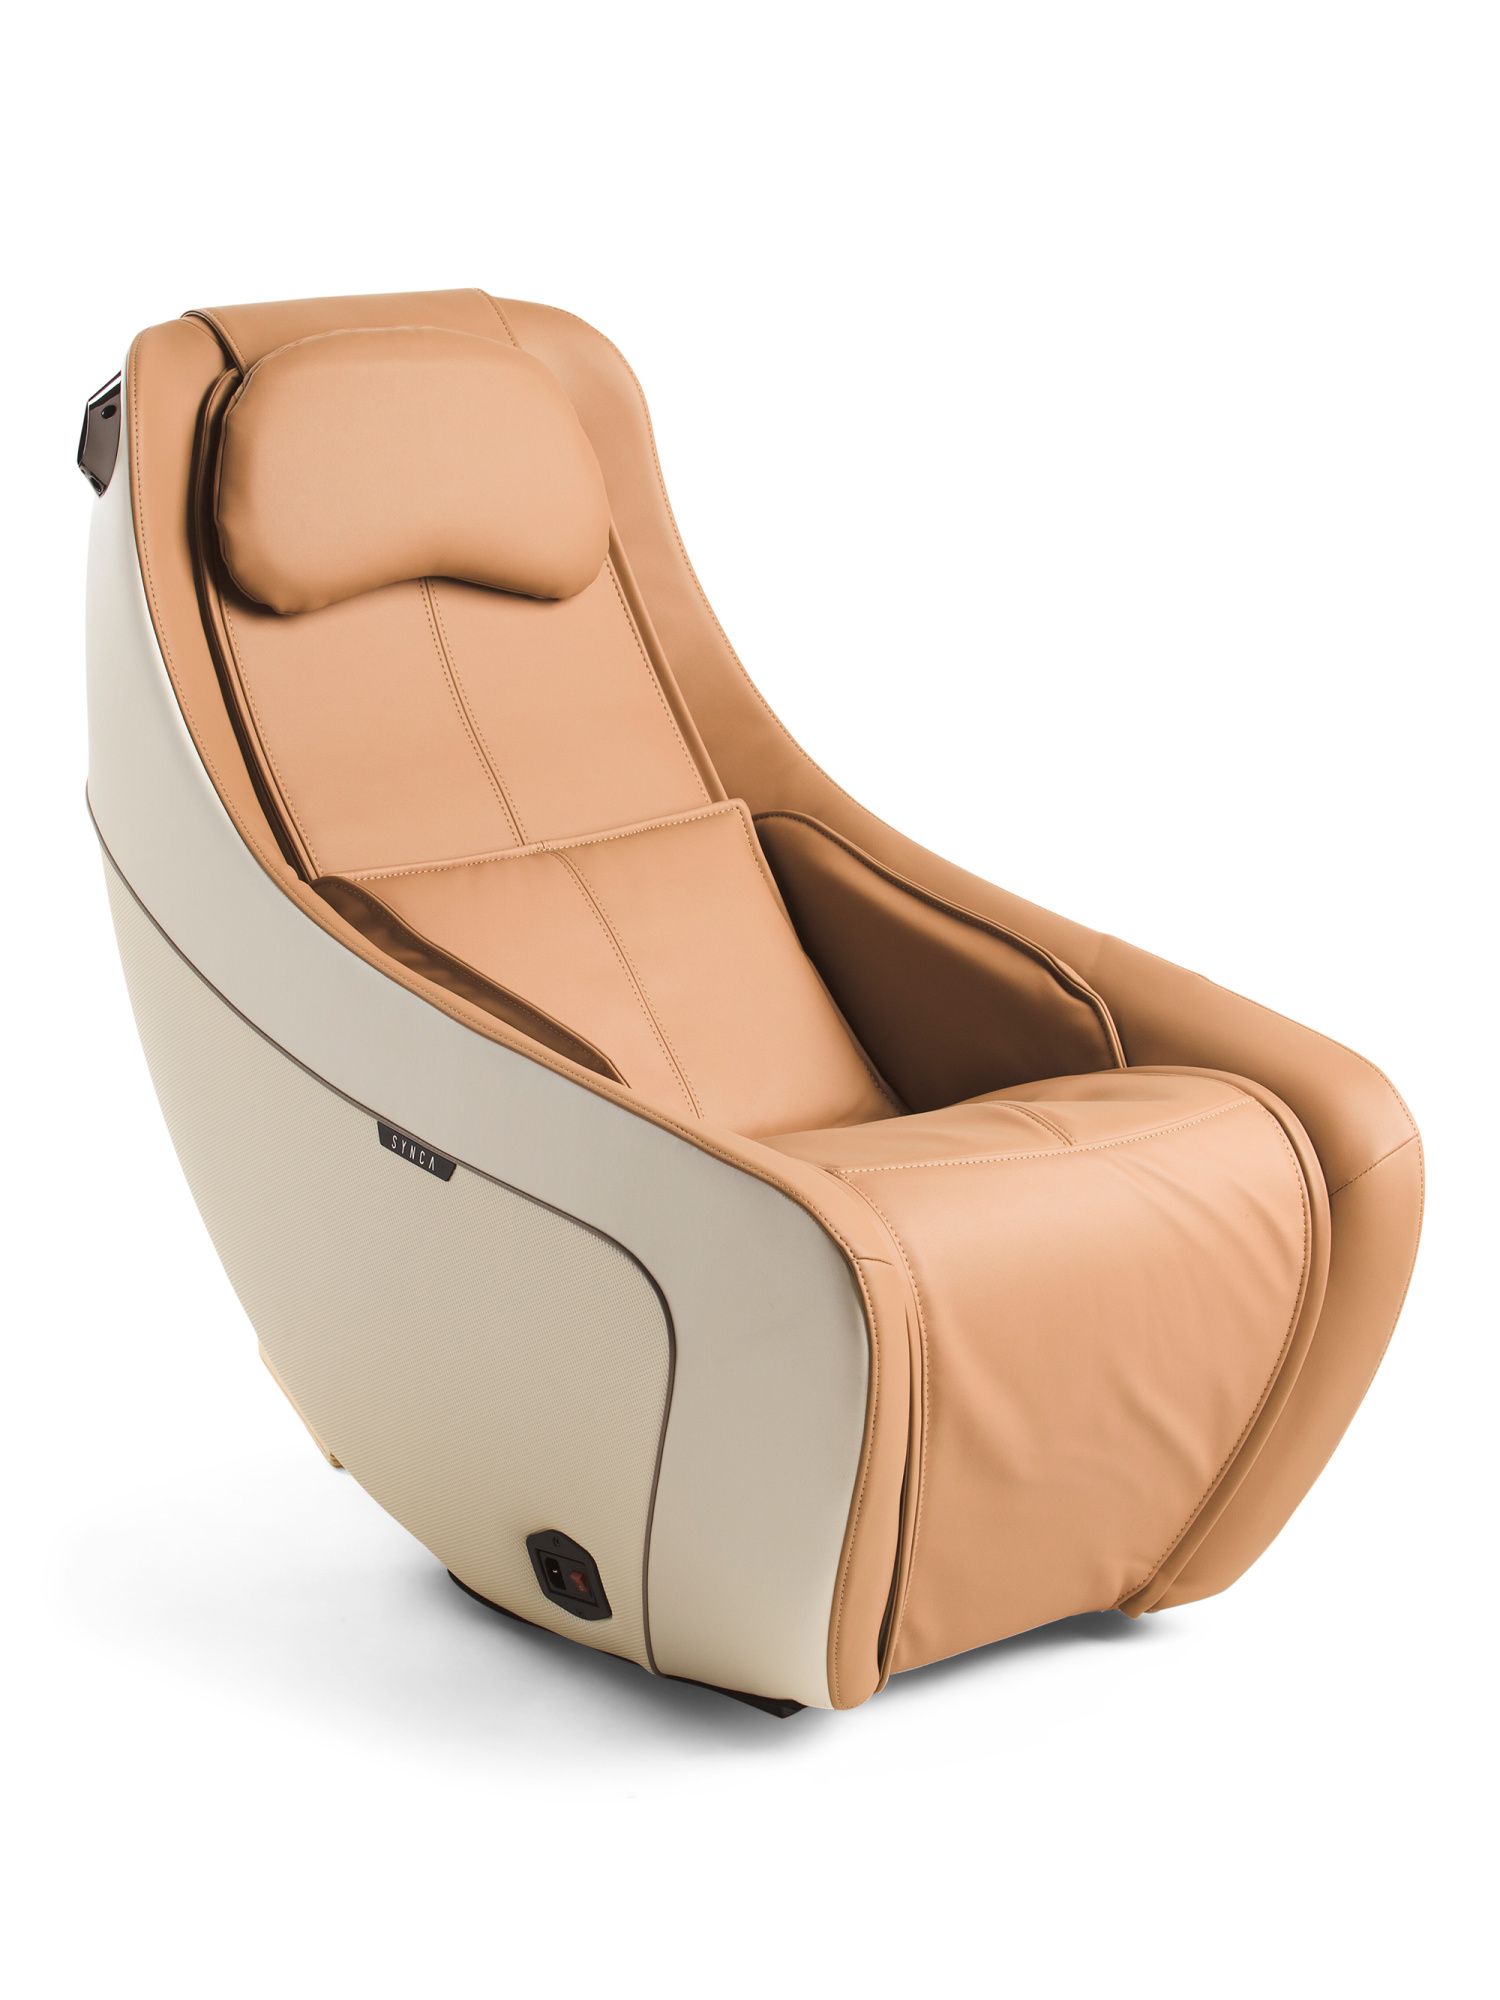 Heated Massage Chair | TJ Maxx